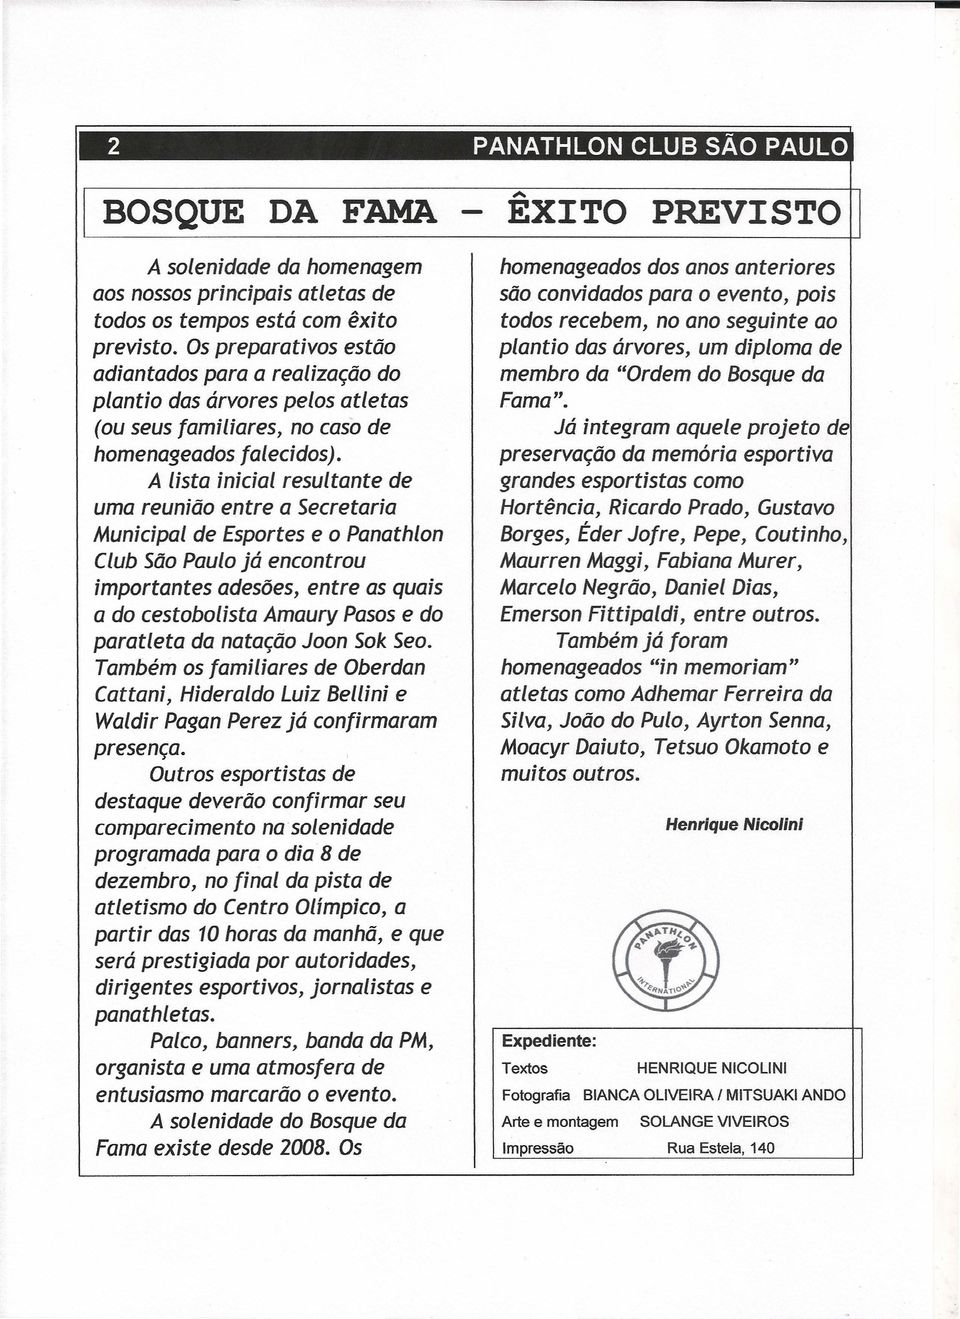 A lista inicial resultante de uma reunião entre a Secretaria Municipal de Esportes e o Panathlon Club São Paulo já encontrou importantes adesões, entre as quais a do cestobolista Amaury Pasos e do